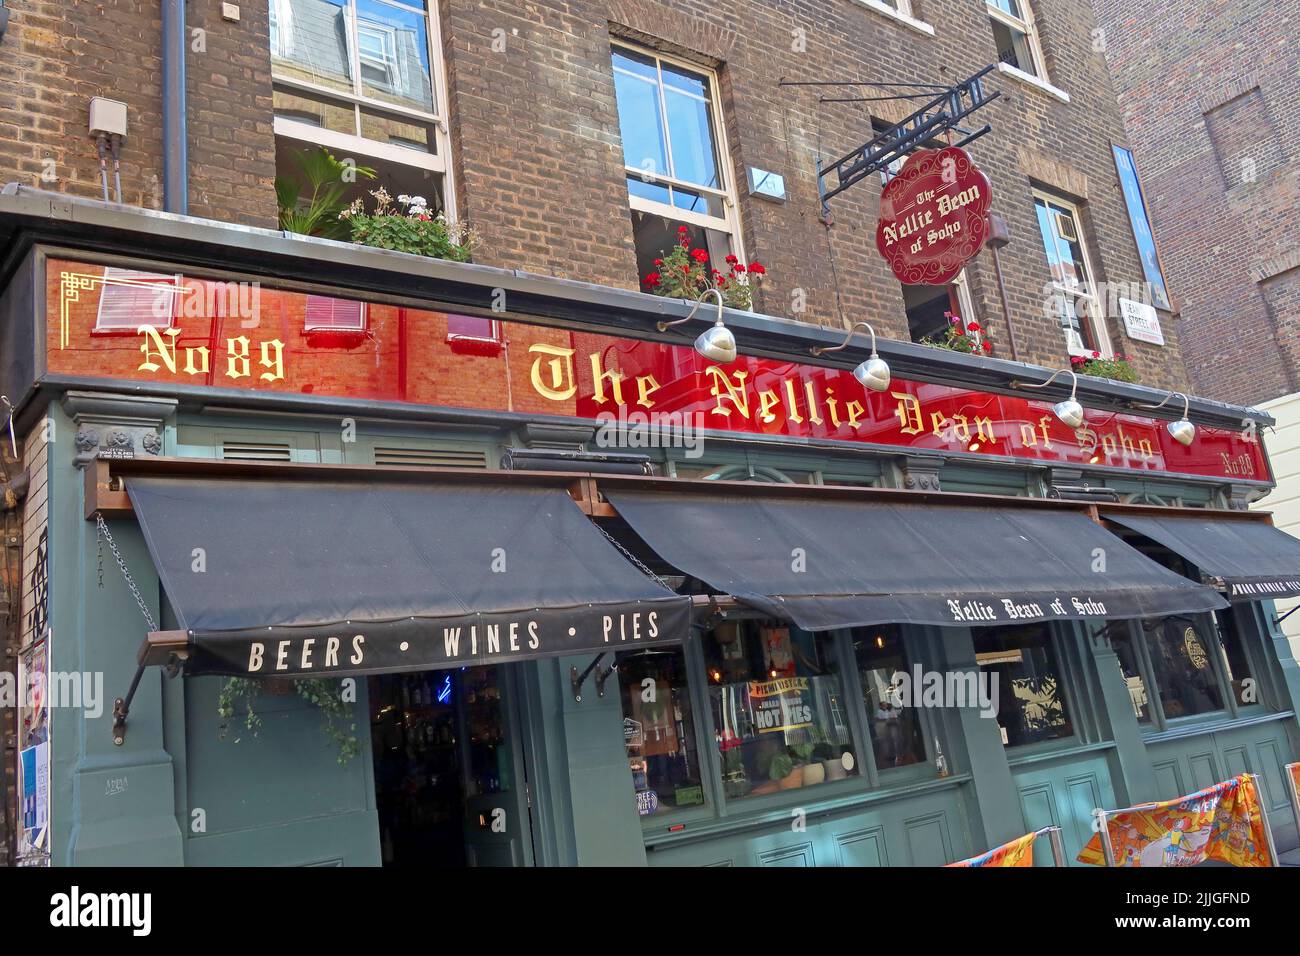 No89, The Nellie Dean of Soho pub - bière, vins, tartes - 89 Dean St, Londres, Angleterre, Royaume-Uni, W1D 3SU - depuis 1967 ( The Highlander ) Banque D'Images